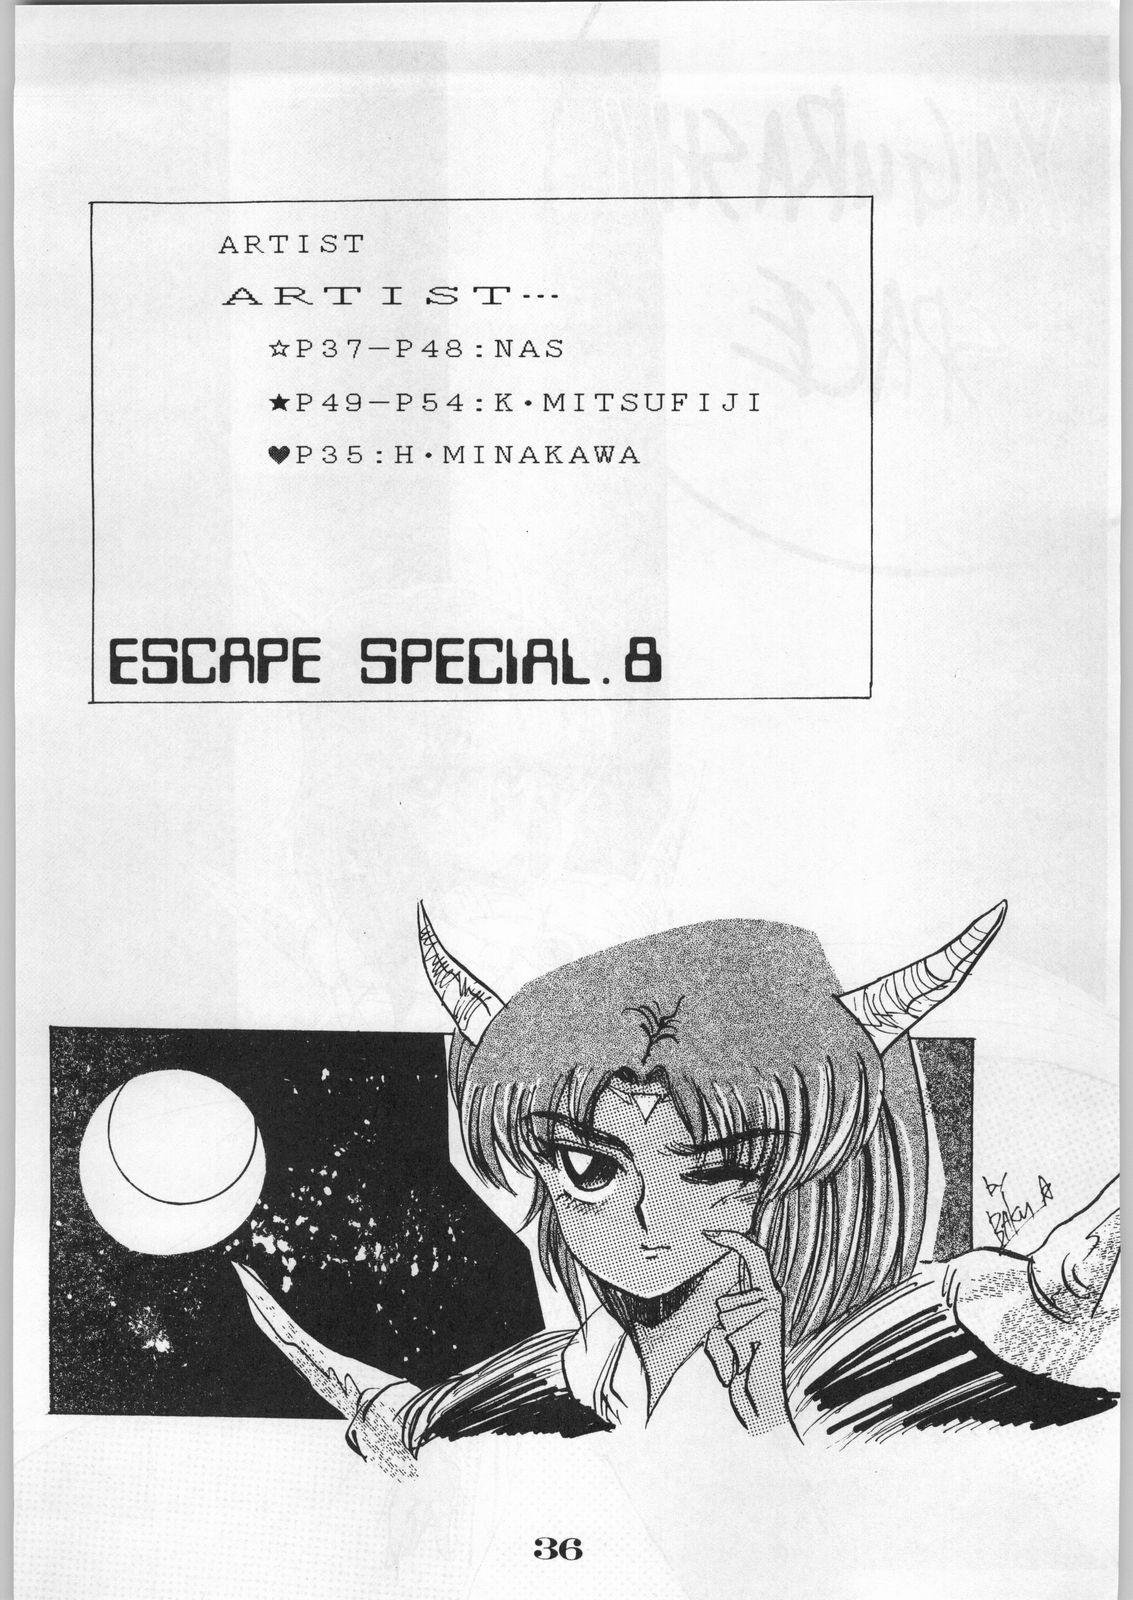 Escape Special 8 - Yosoashi 37